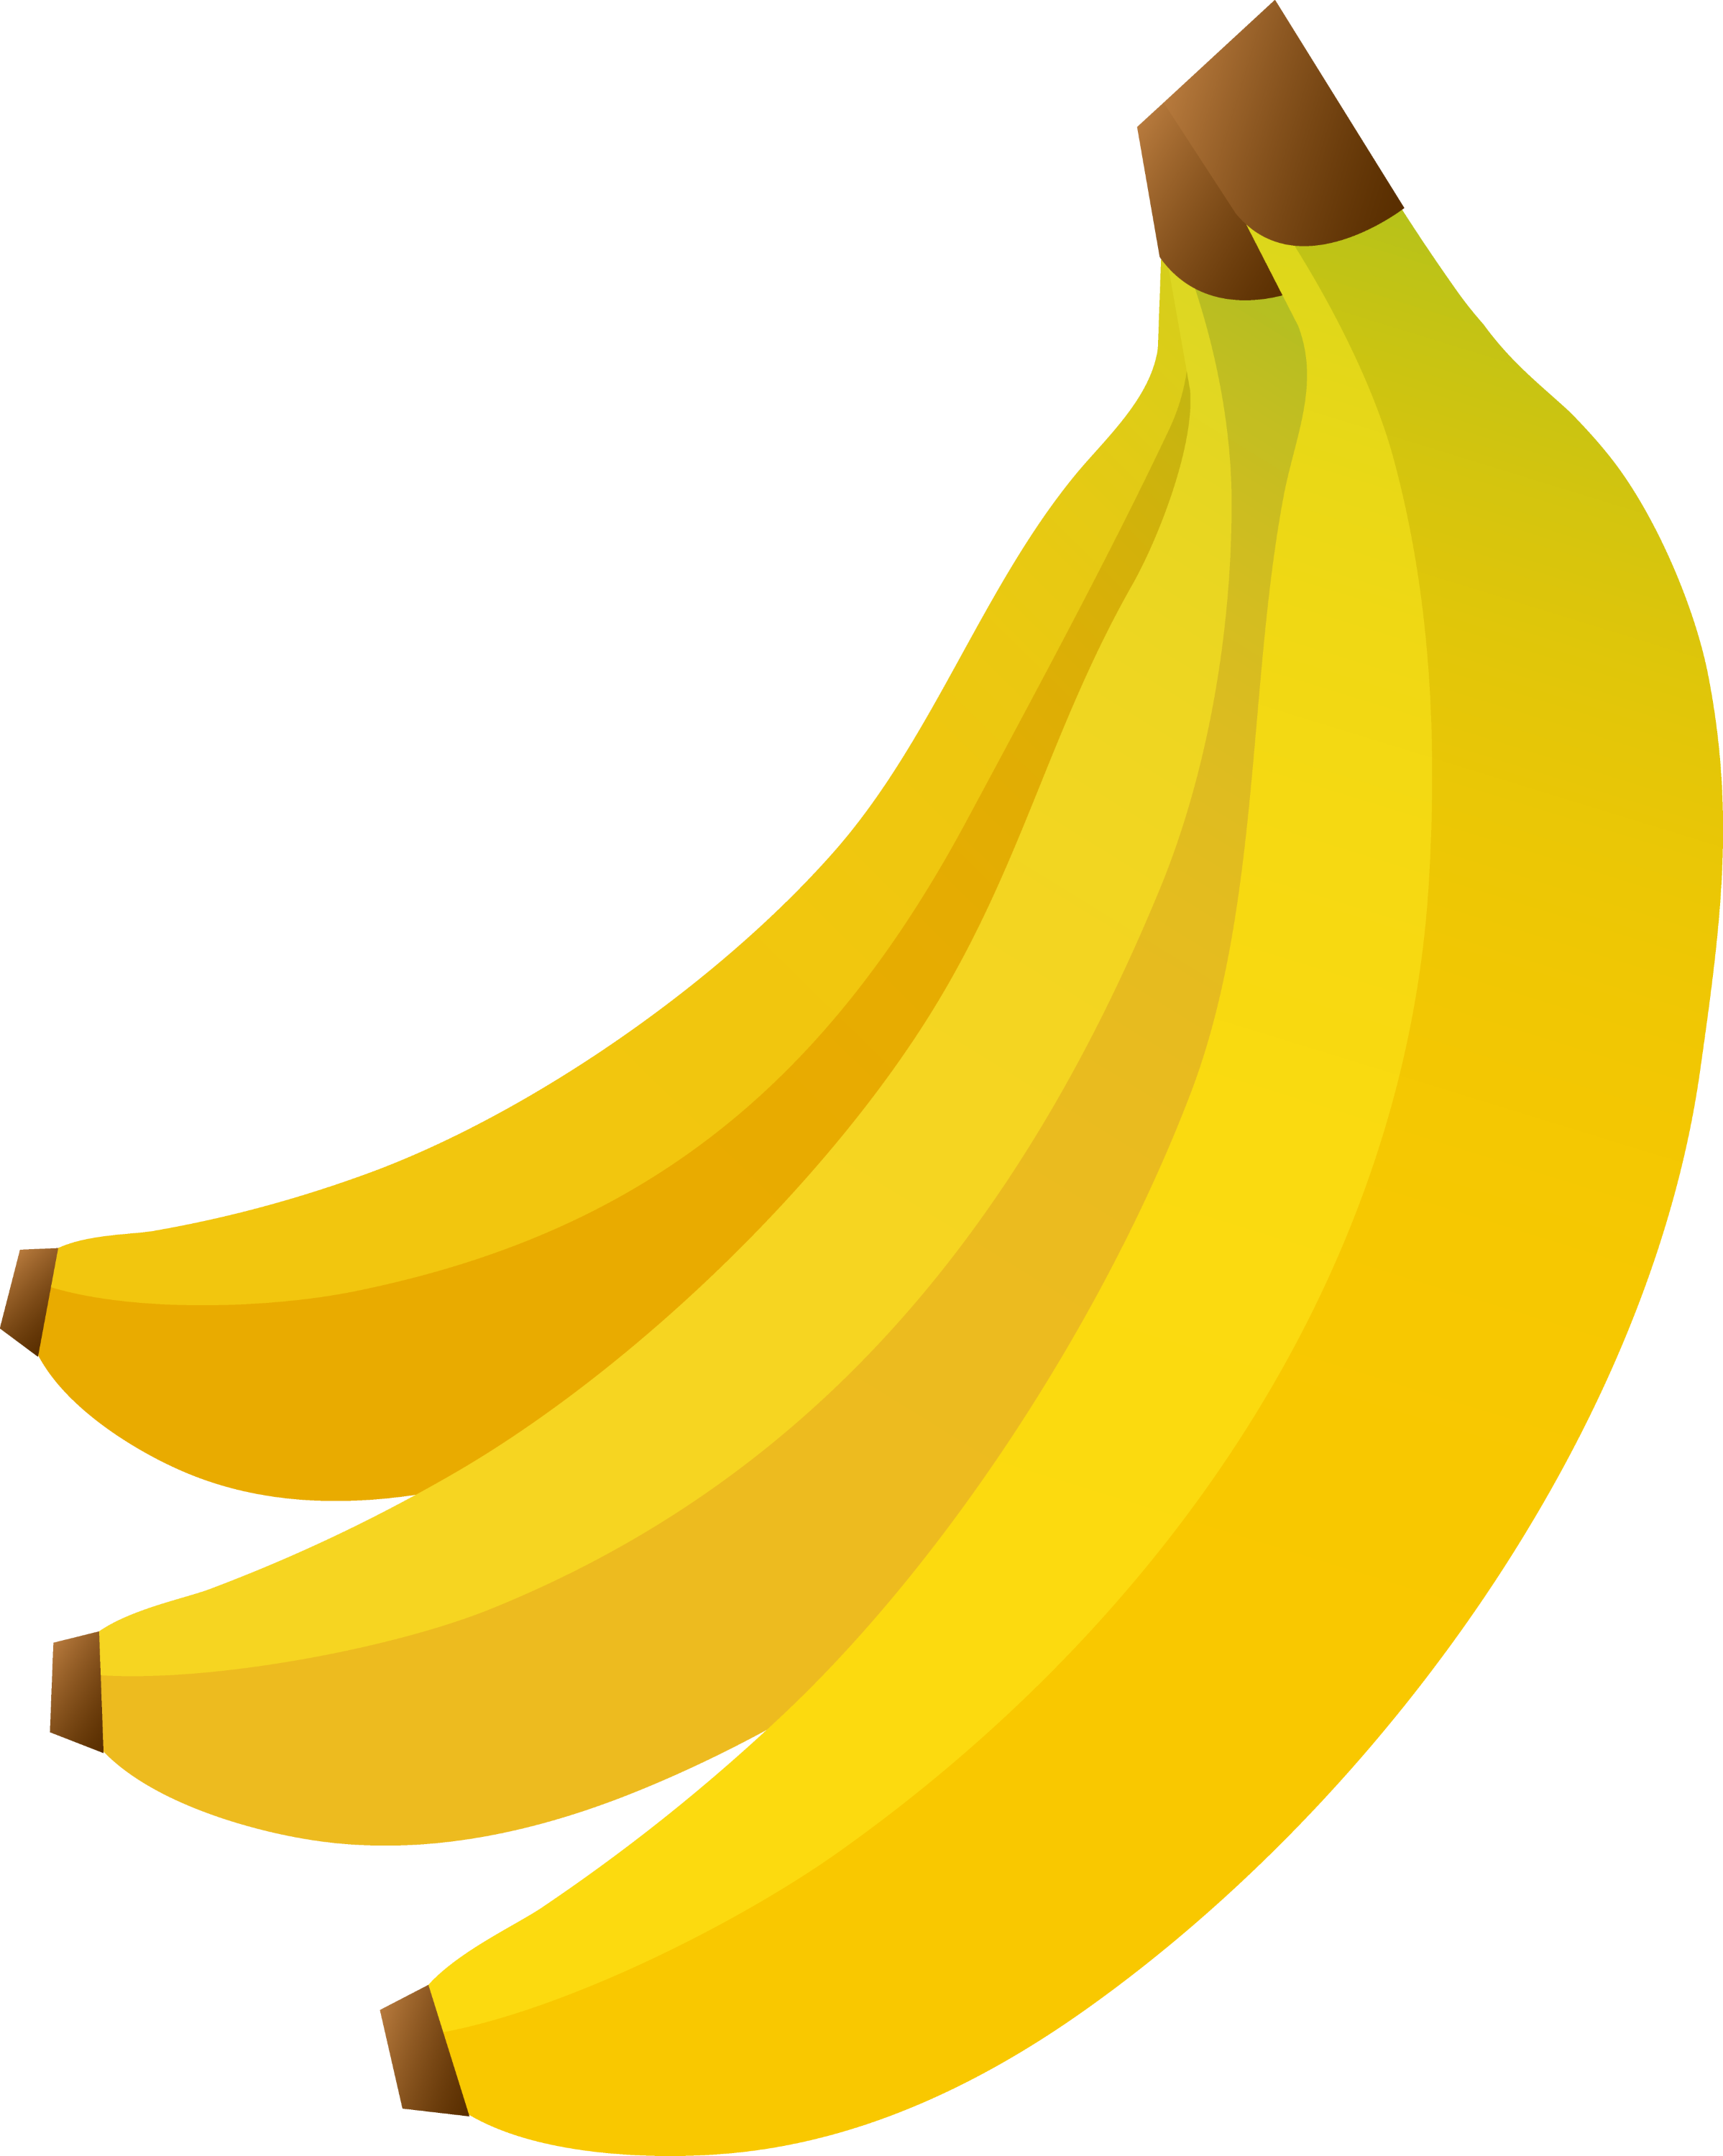 clipart of banana - photo #18